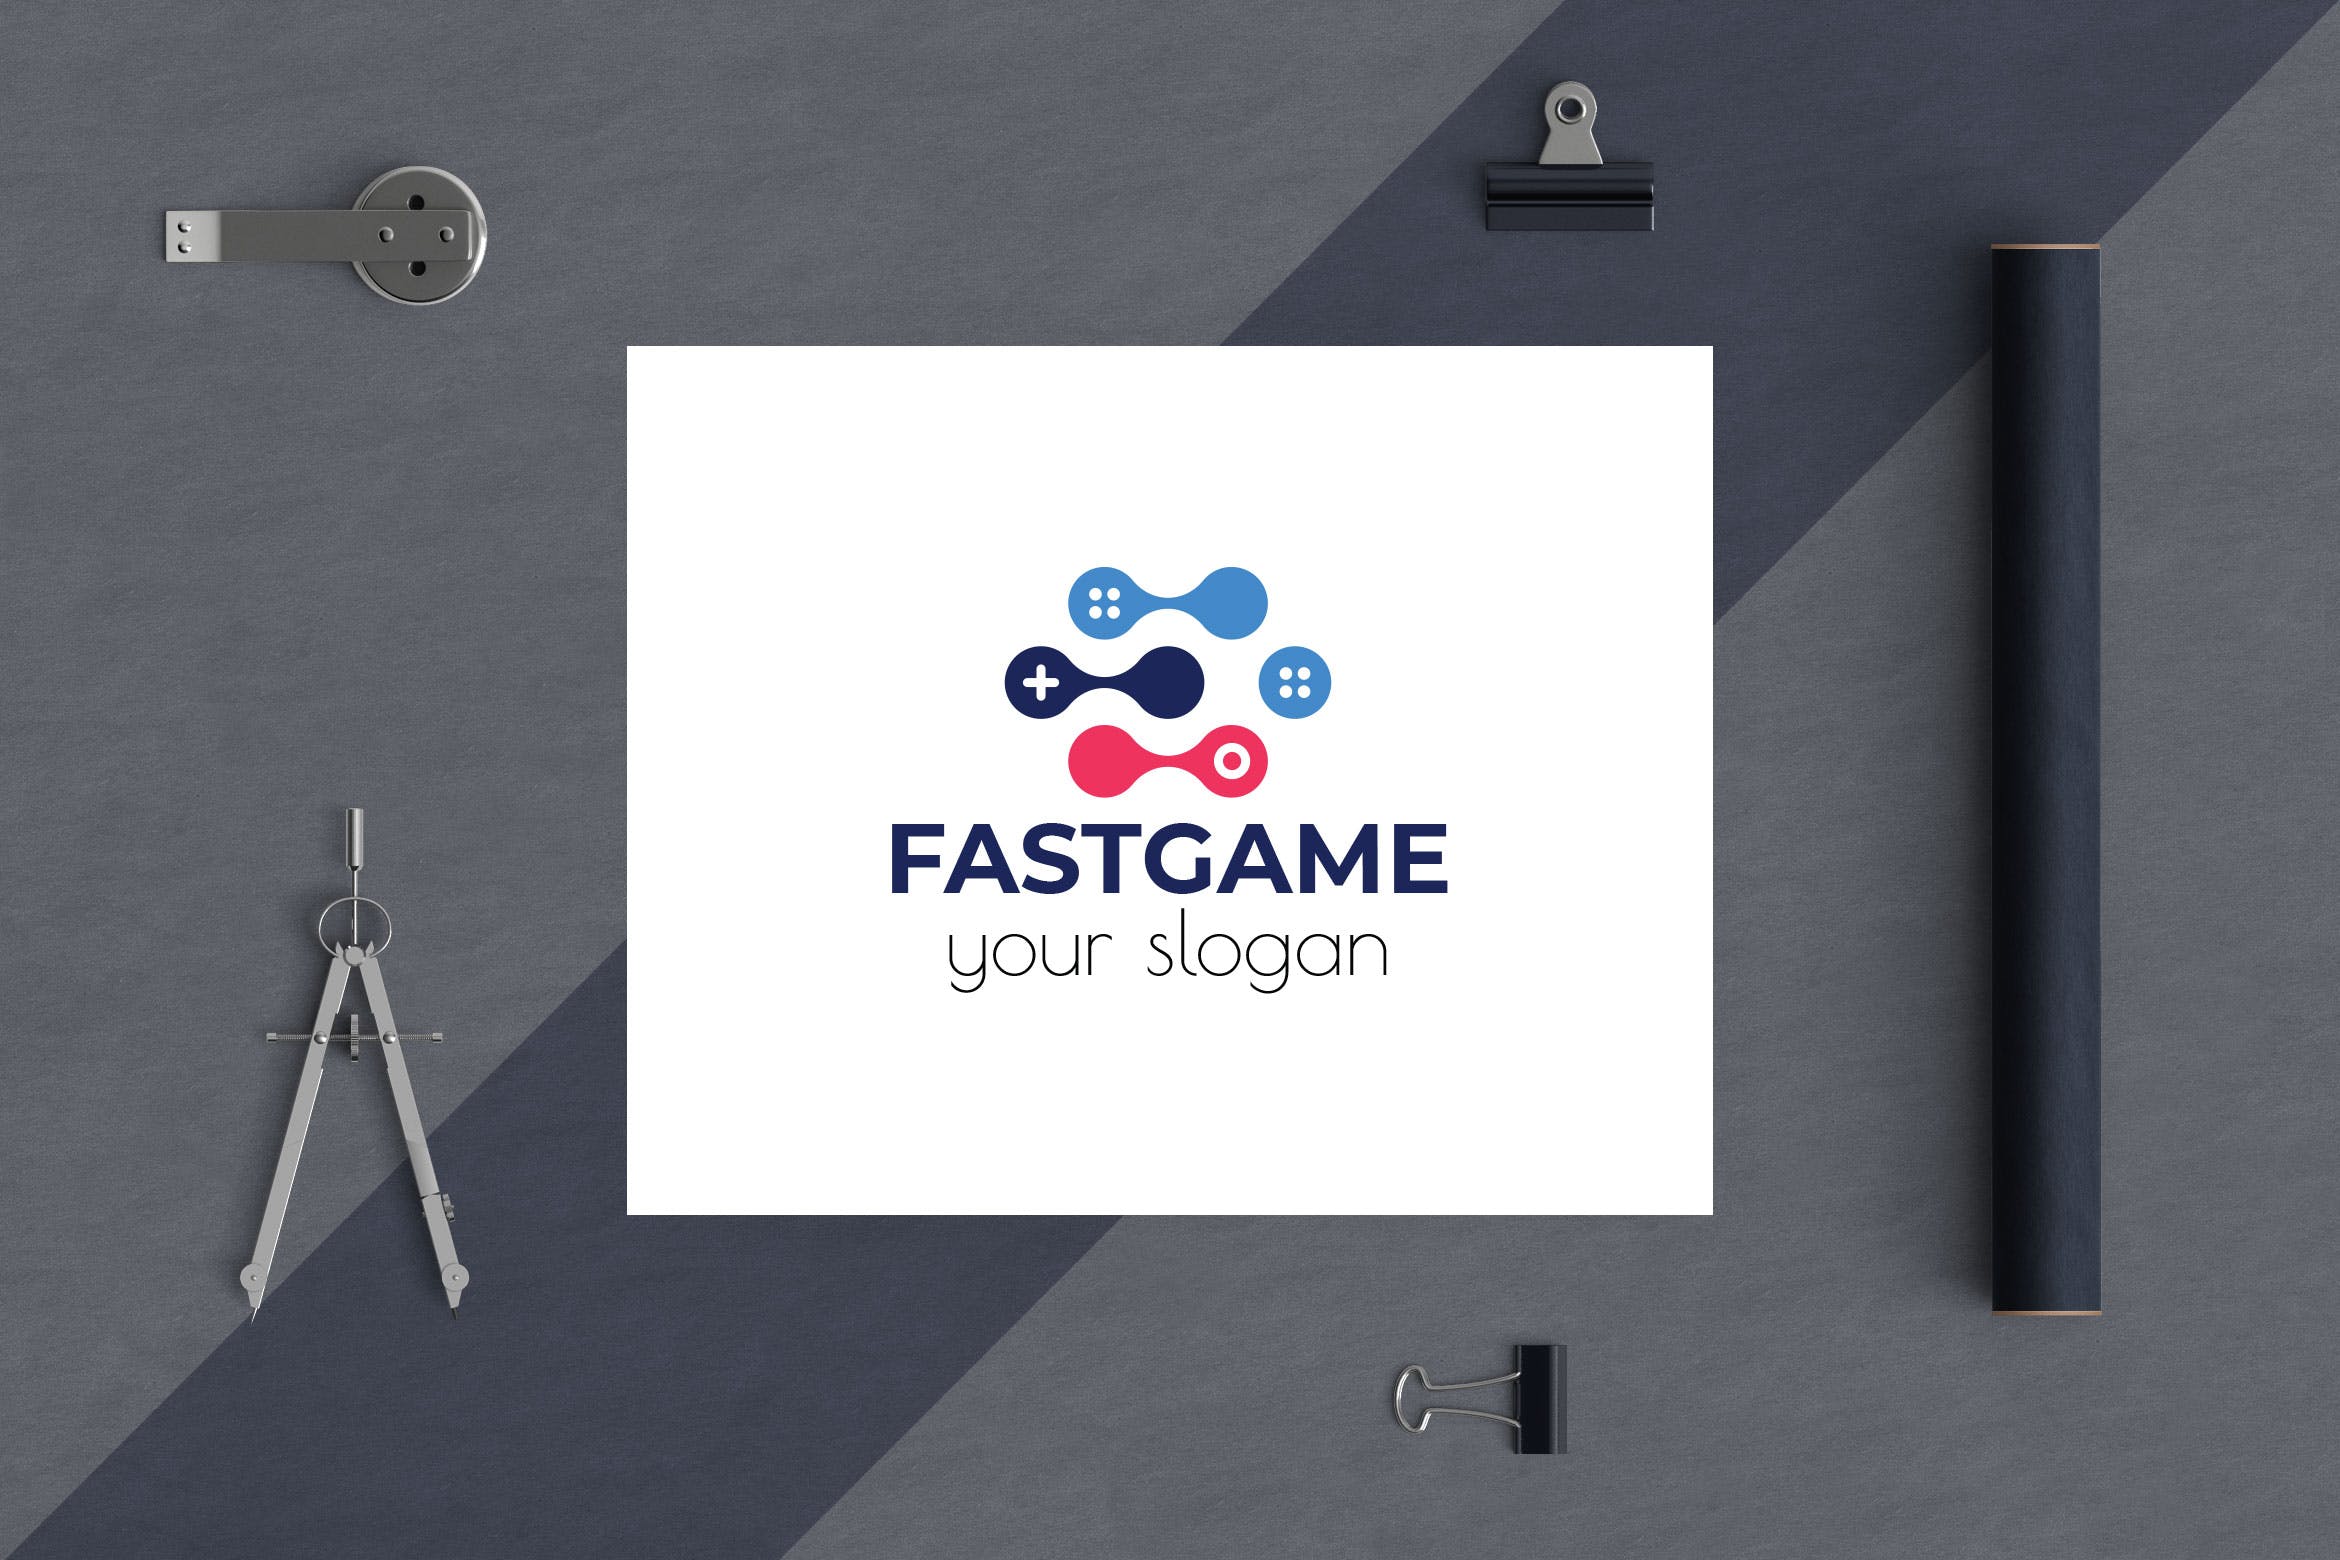 游戏加速器Logo设计素材中国精选模板 Fast Game Business Logo Template插图